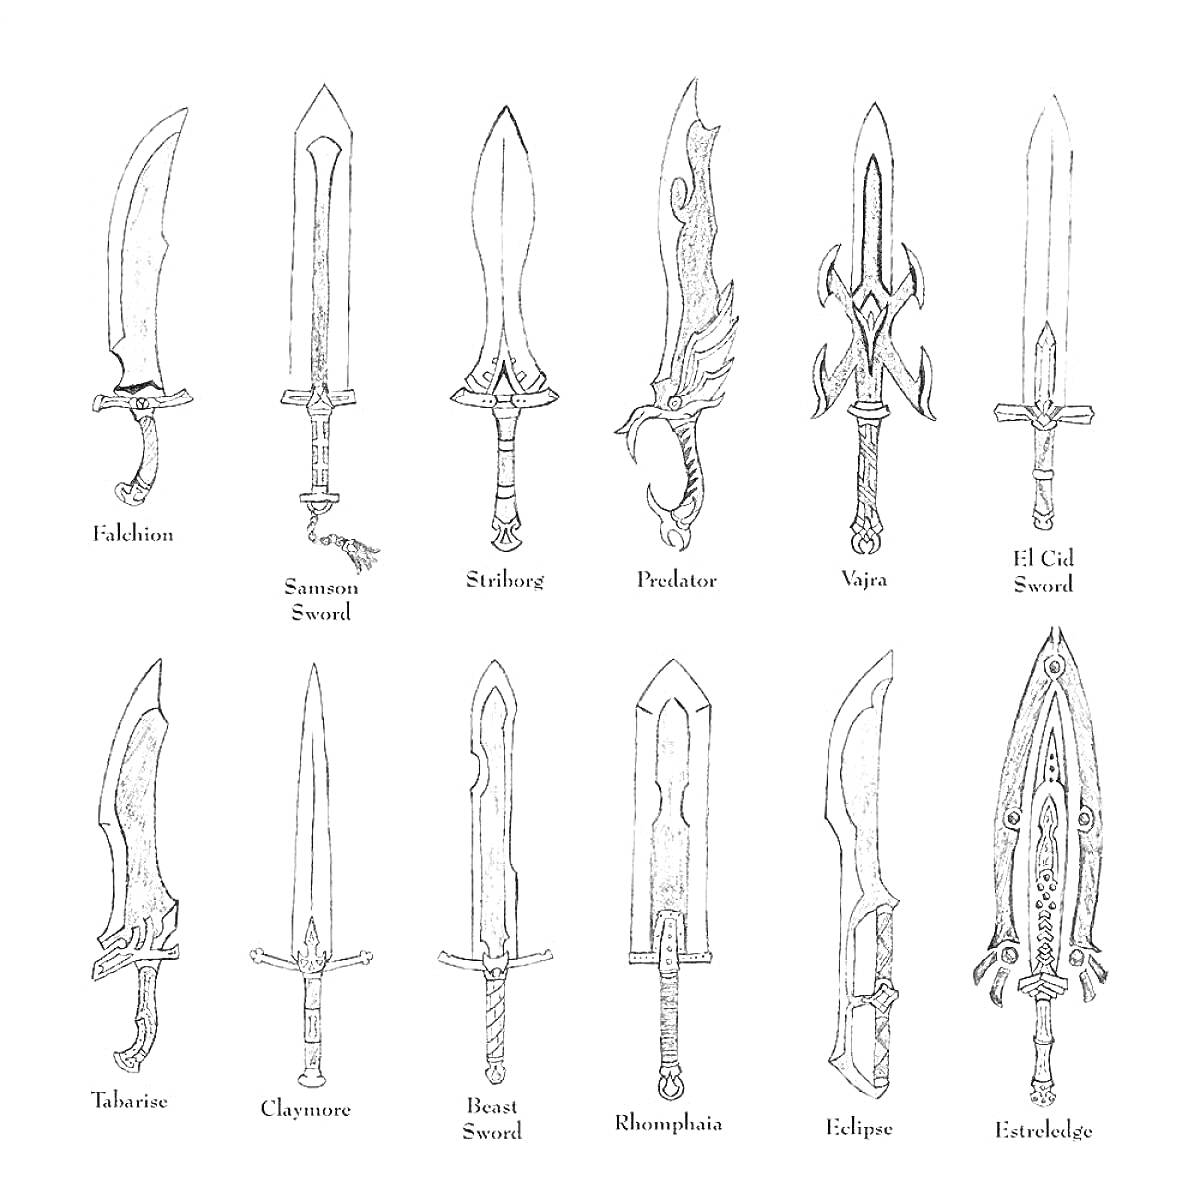 Раскраска Разные виды клинков: фальшион, баронский меч, синдбад, фентон, вакра, старый меч, талониус, клеовер, проклятый меч, монолитный меч, затмение, инферноид